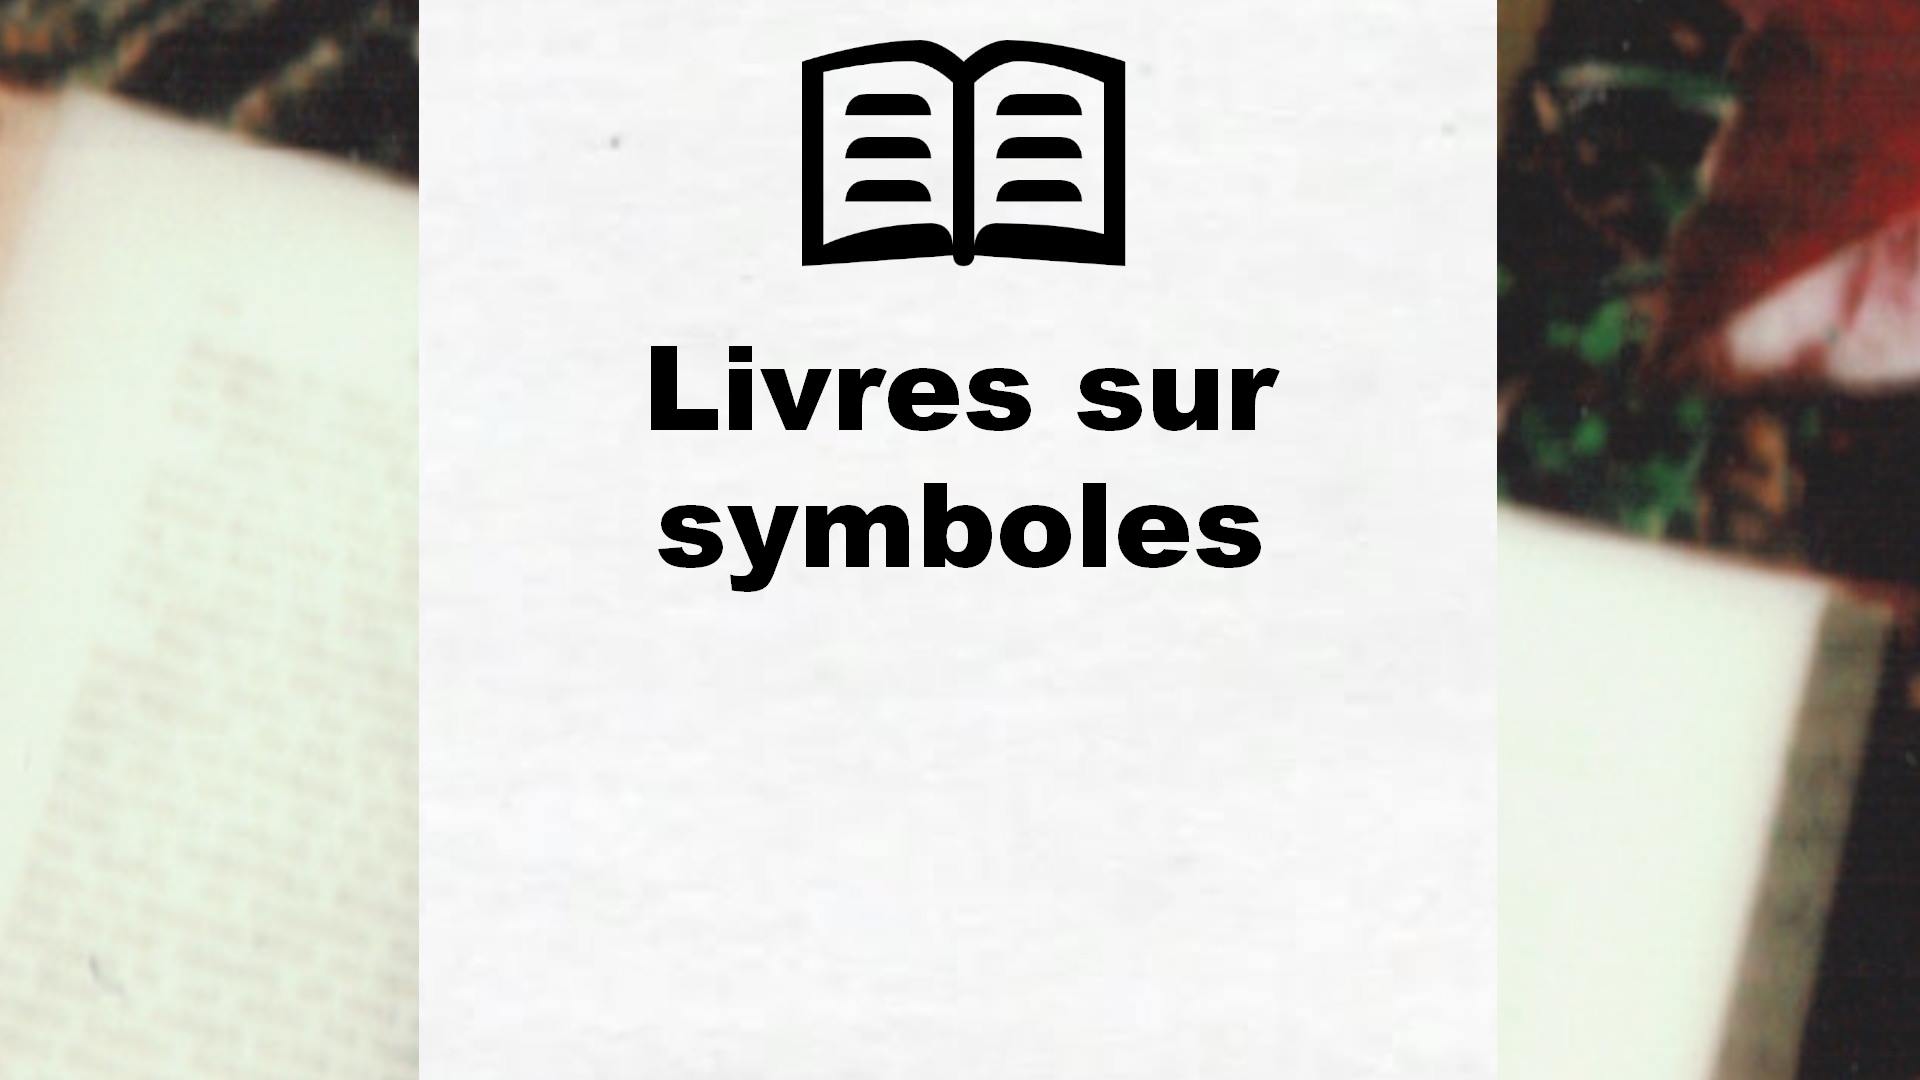 Livres sur symboles